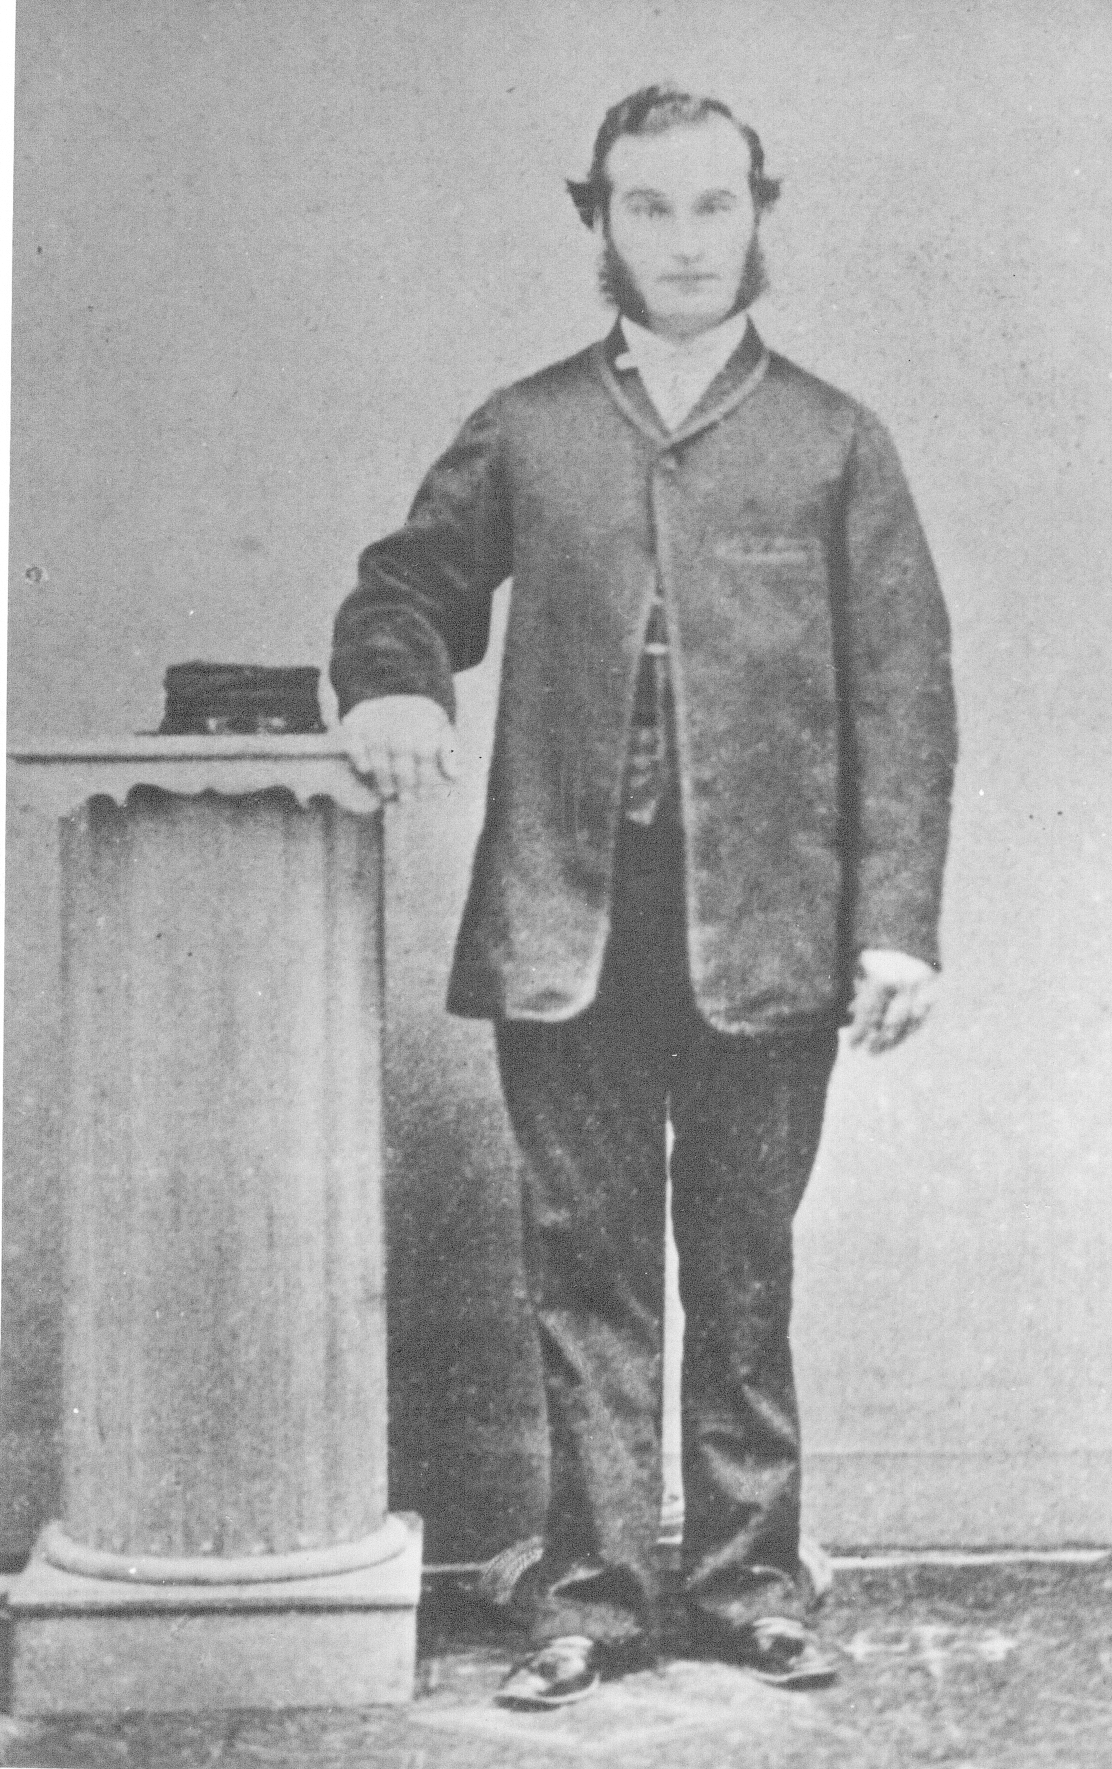 Picture of young Antonio Rodriquez, c. 1860